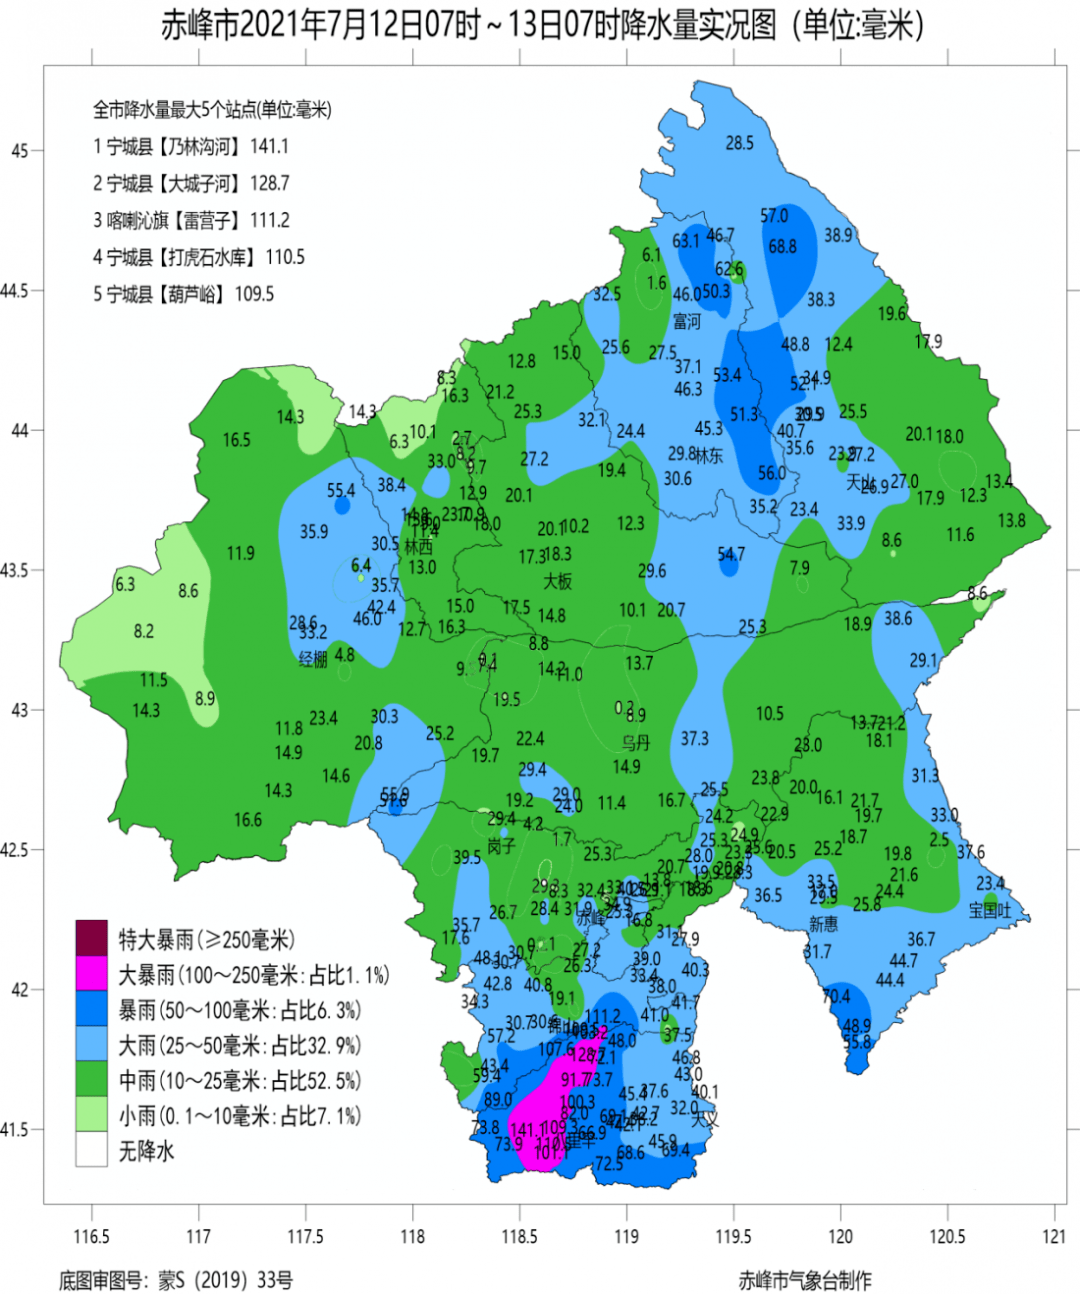 二,降水量实况图7月12日07时～13日07时赤峰市出现中雨以上的降雨天气